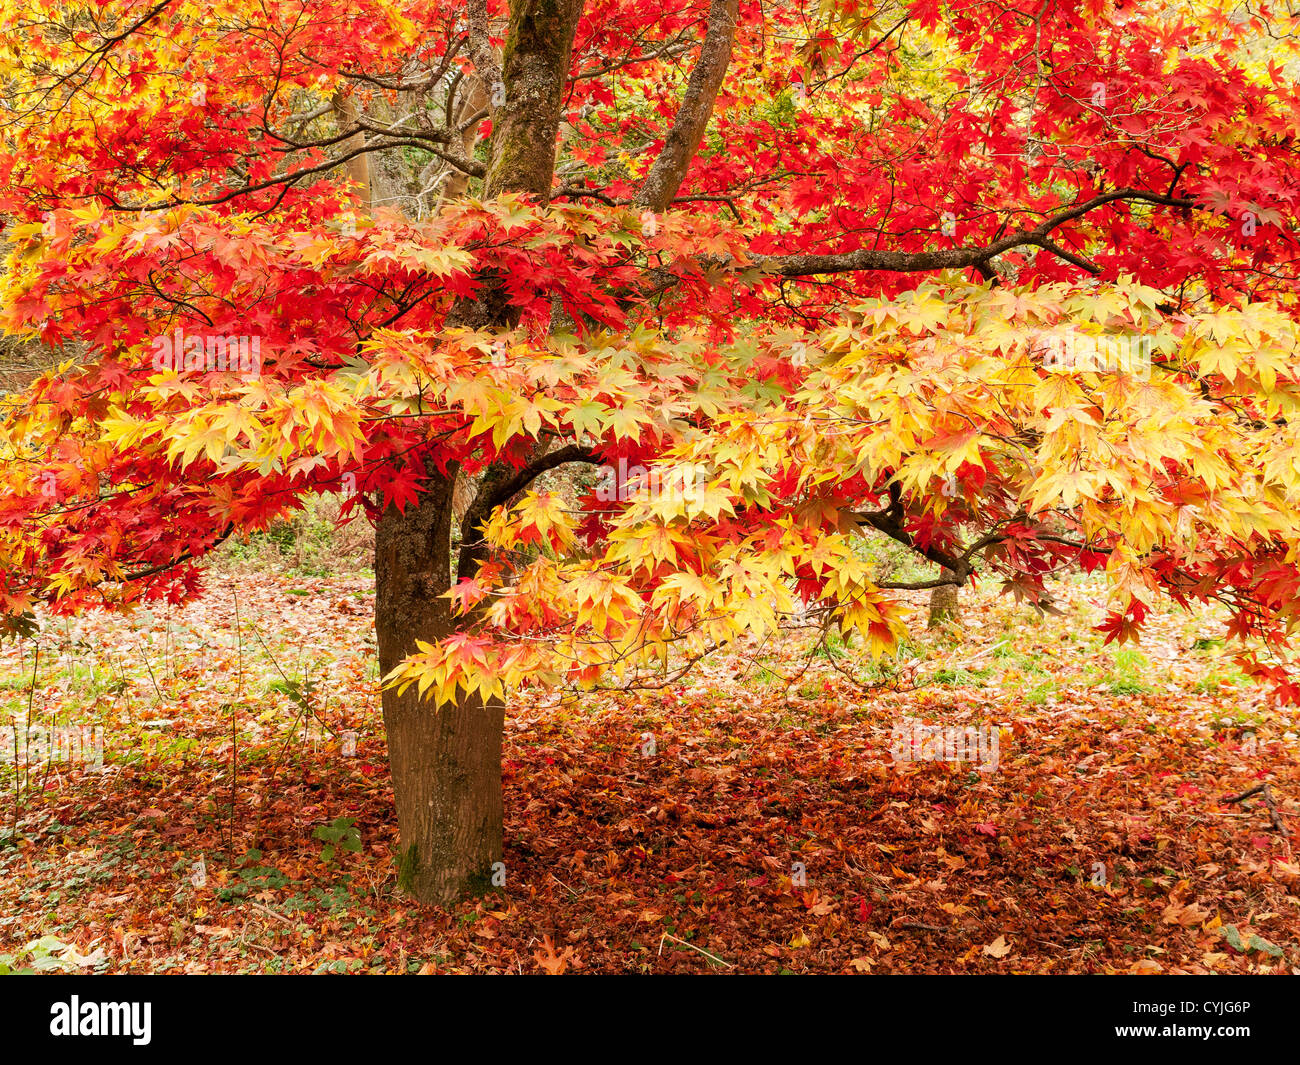 Acer Baum und Blätter, allgemeiner Name Maple, in voller Herbstfarbe in Winkworth Arboretum, Surrey, Großbritannien Stockfoto